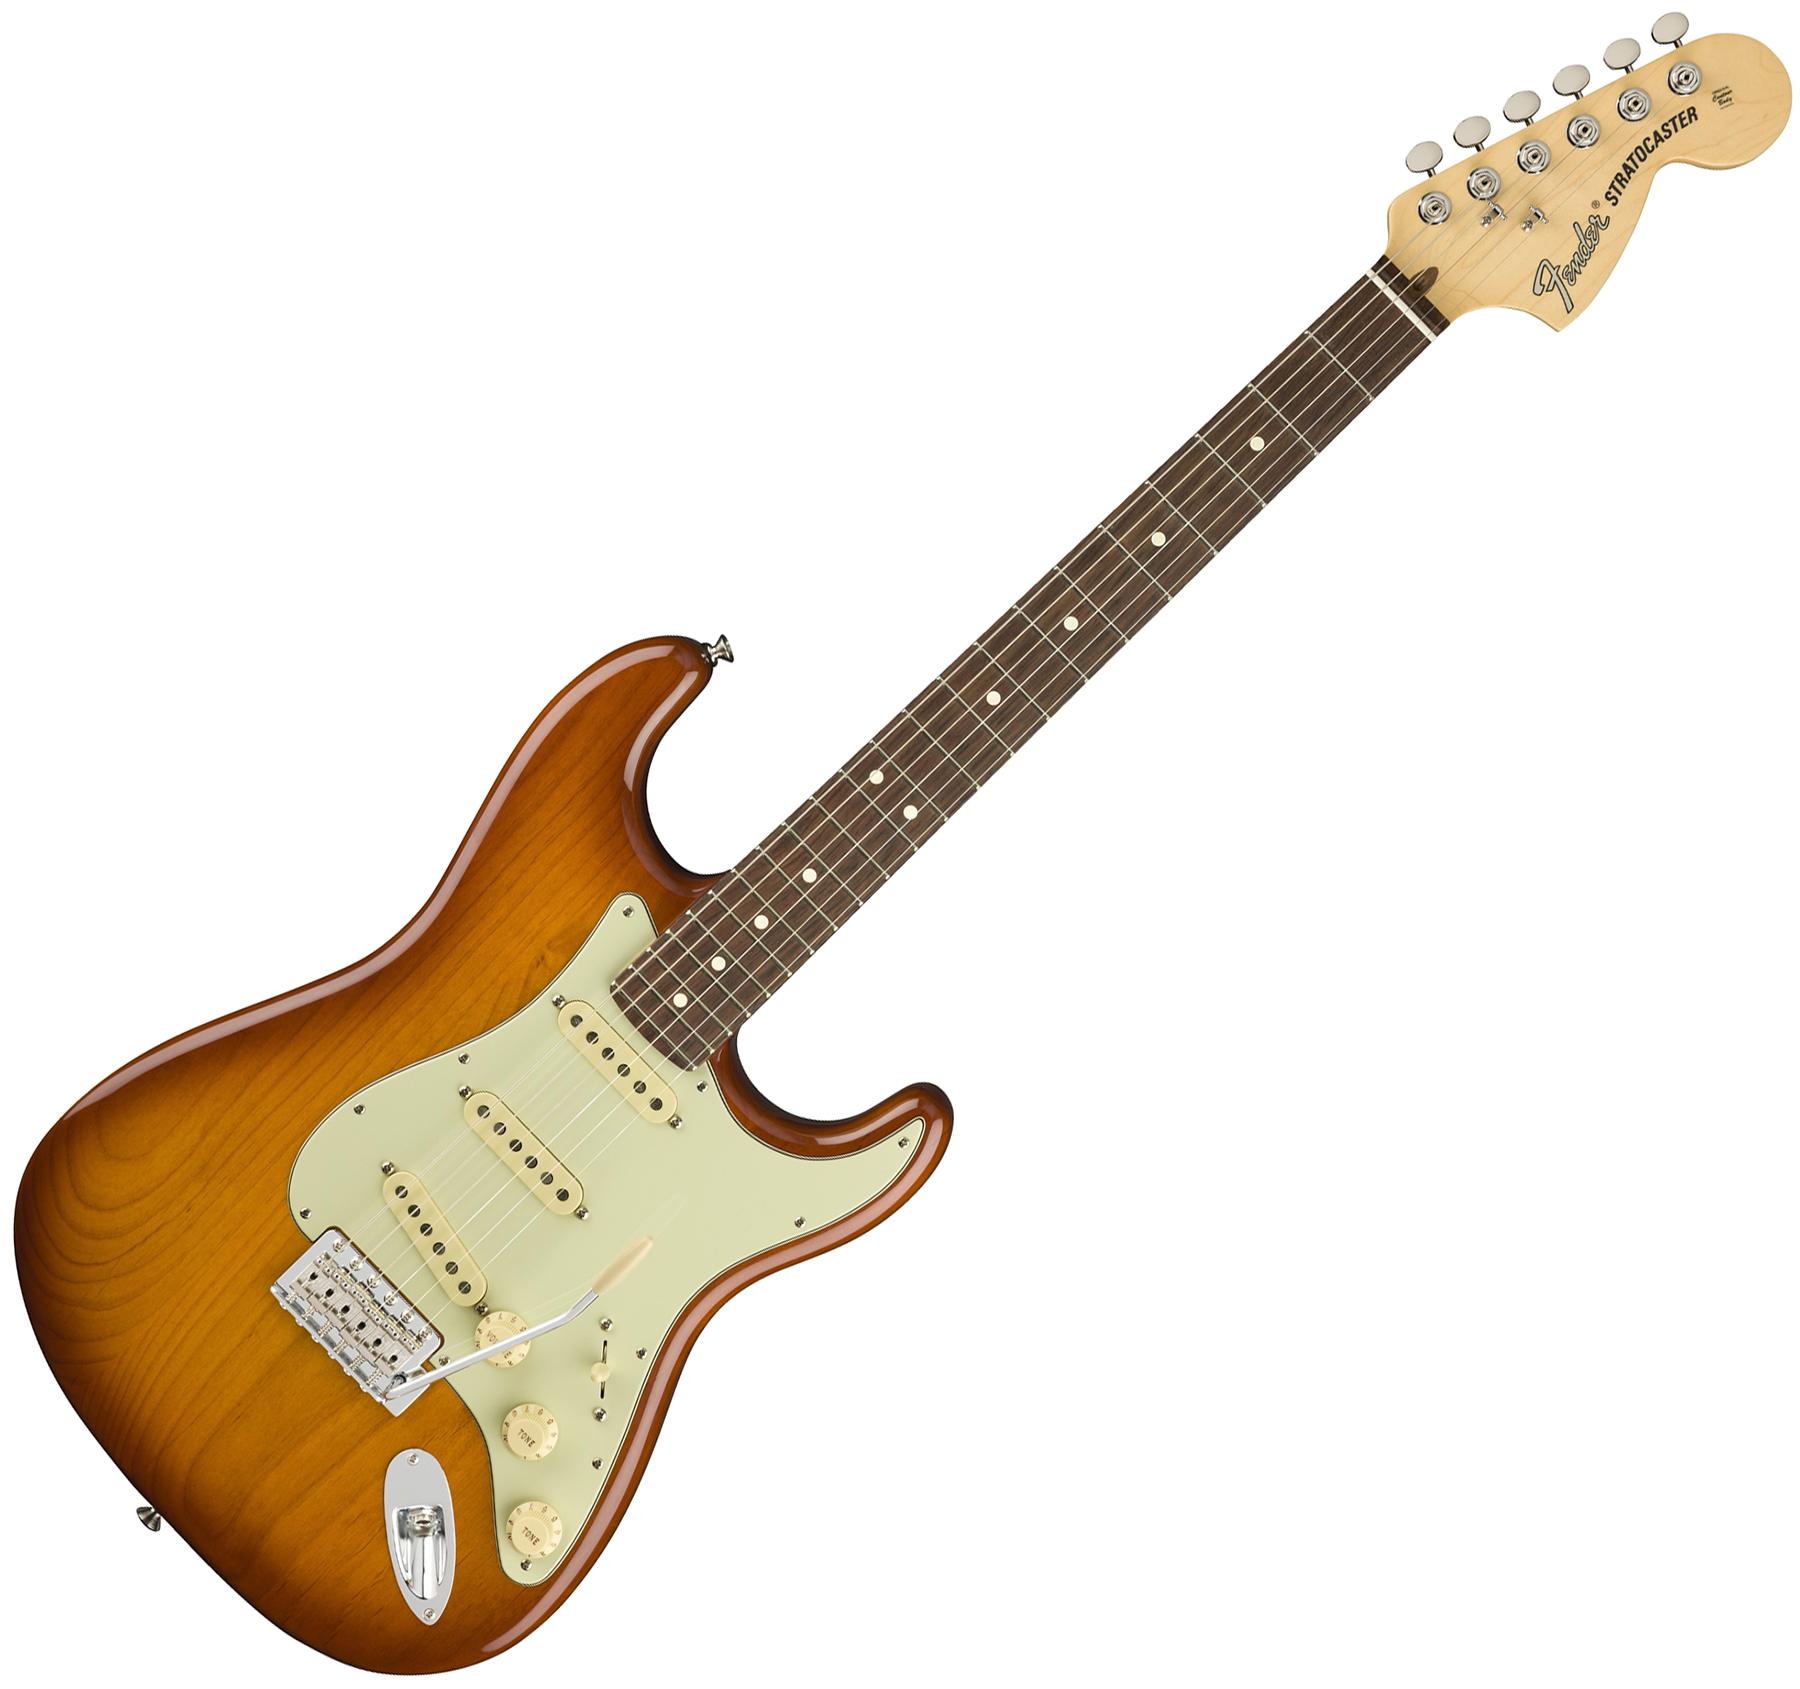 Fender Strat American Performer Usa Sss Rw - Honey Burst - Guitarra eléctrica con forma de str. - Variation 2